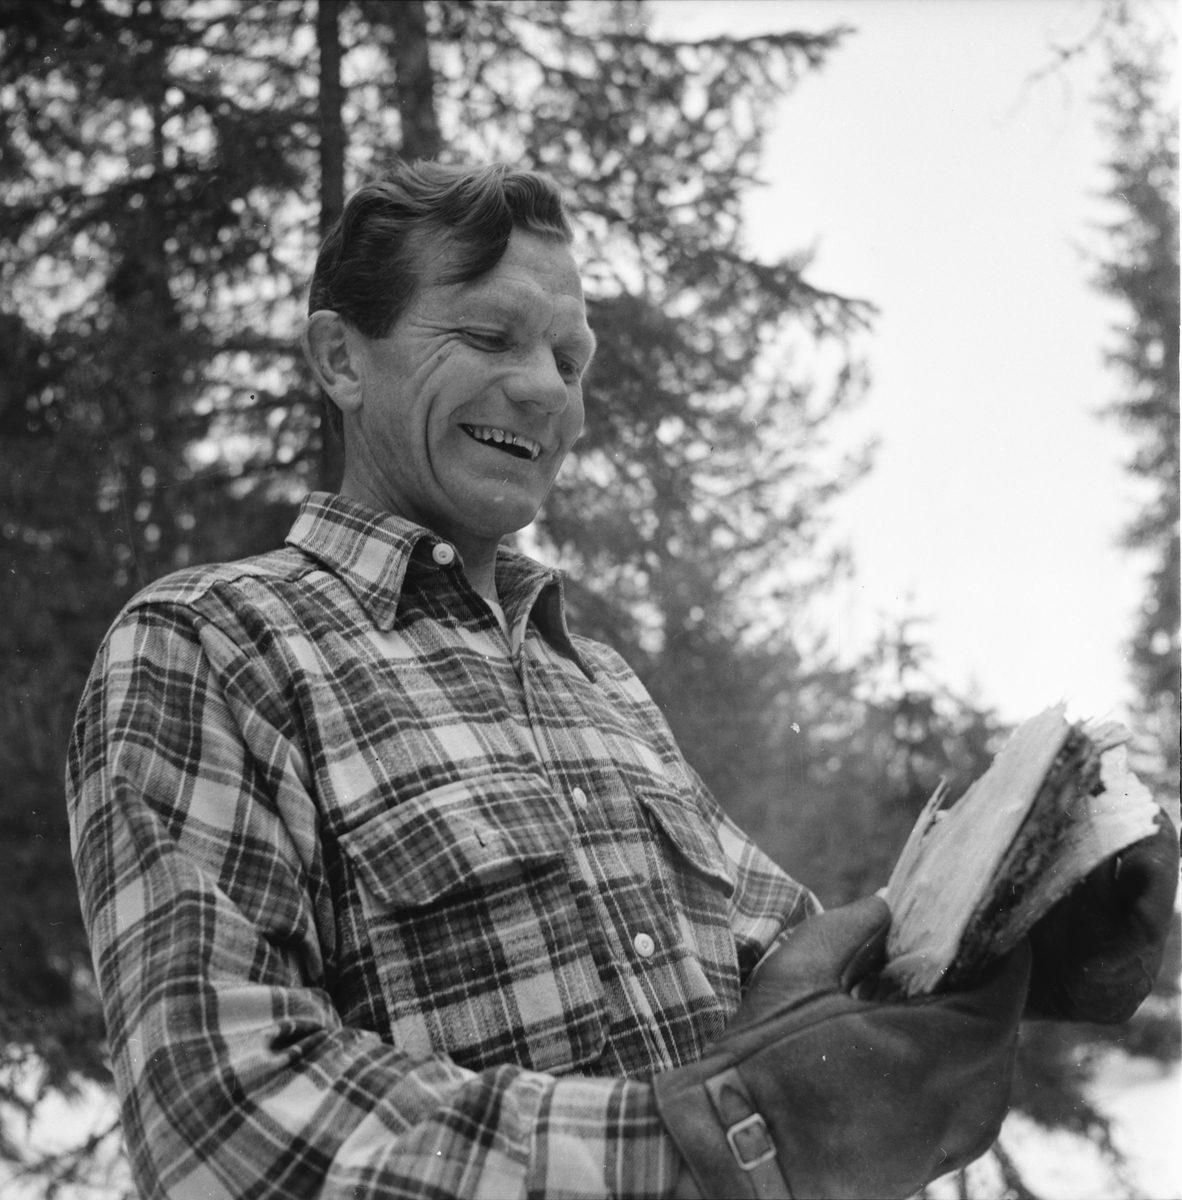 Drivningar på Håsnäs.
Josef Lindberg.
Söderala april- 1956